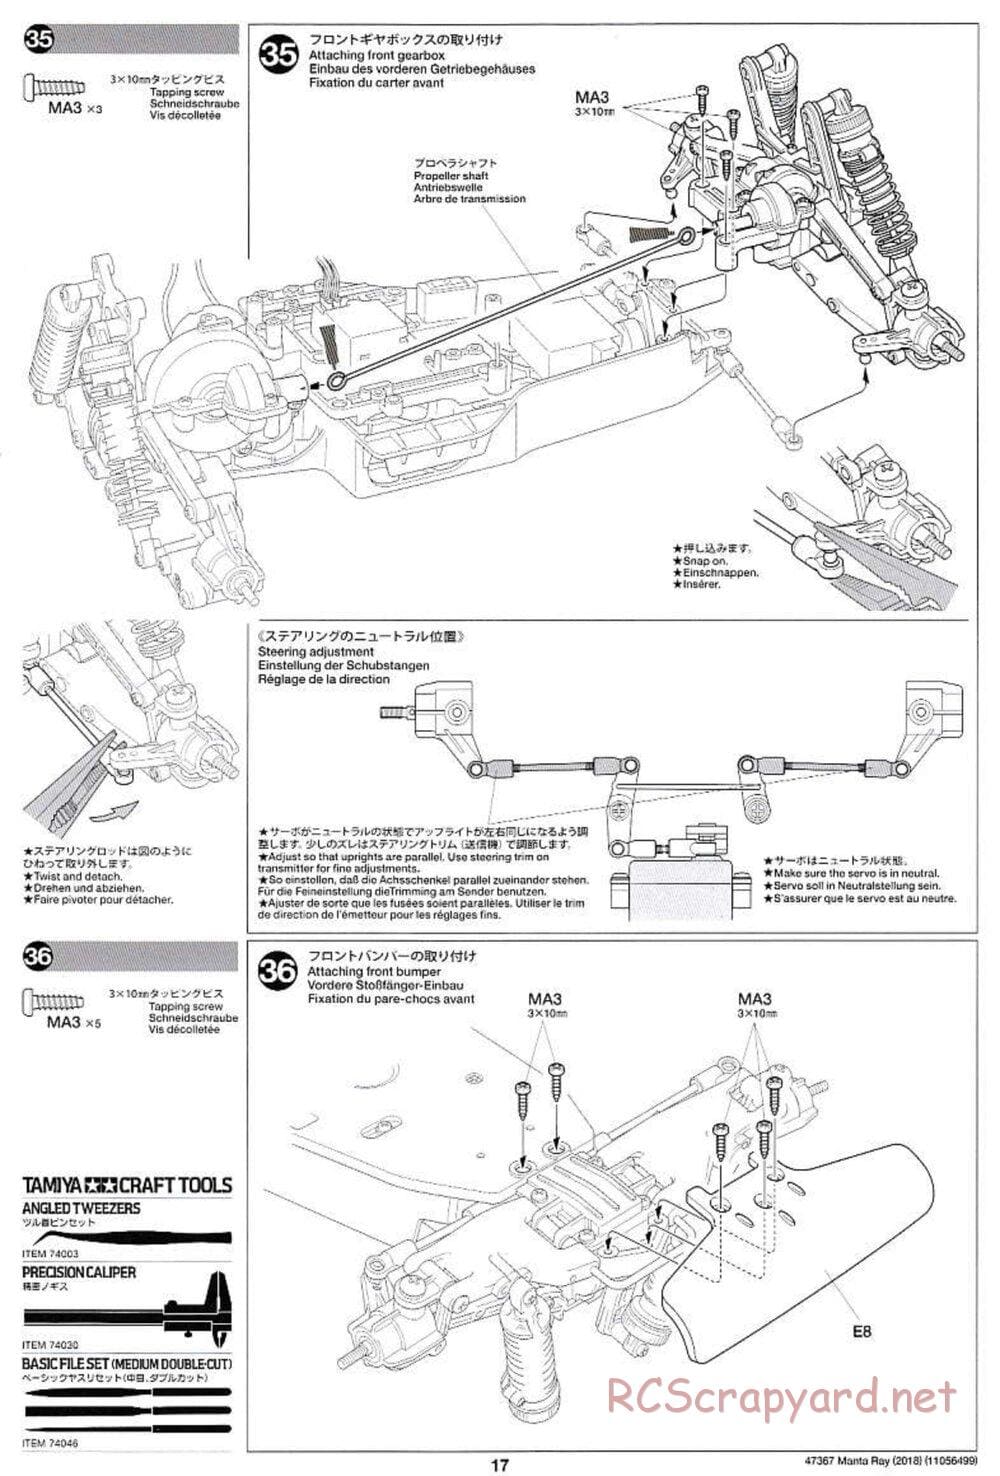 Tamiya - Manta Ray 2018 - DF-01 Chassis - Manual - Page 17